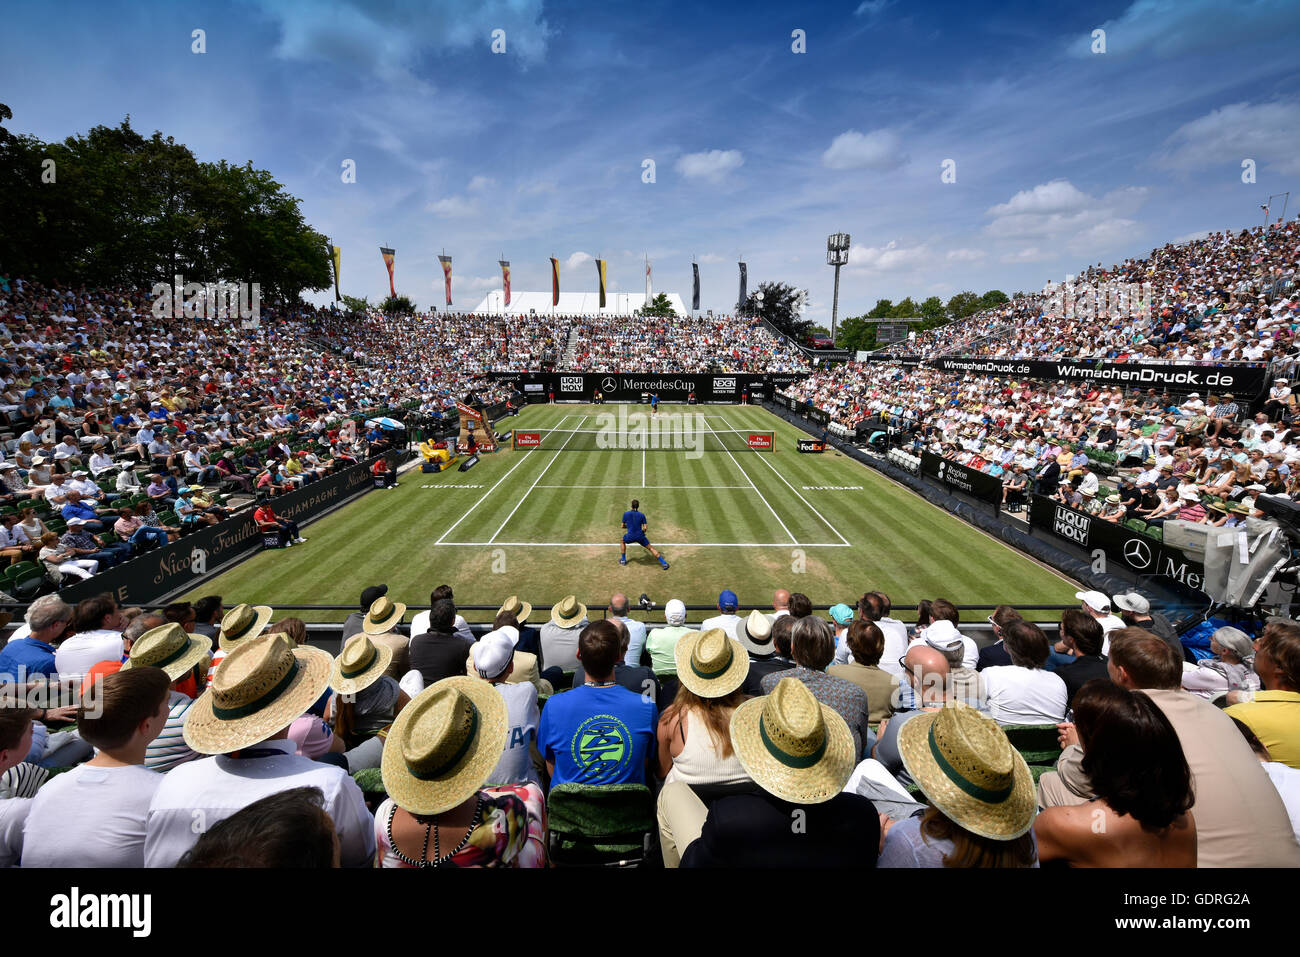 Tennis, spectators on centre court, Roger Federer, SUI, MercedesCup, Stuttgart, Baden-Württemberg, Germany Stock Photo